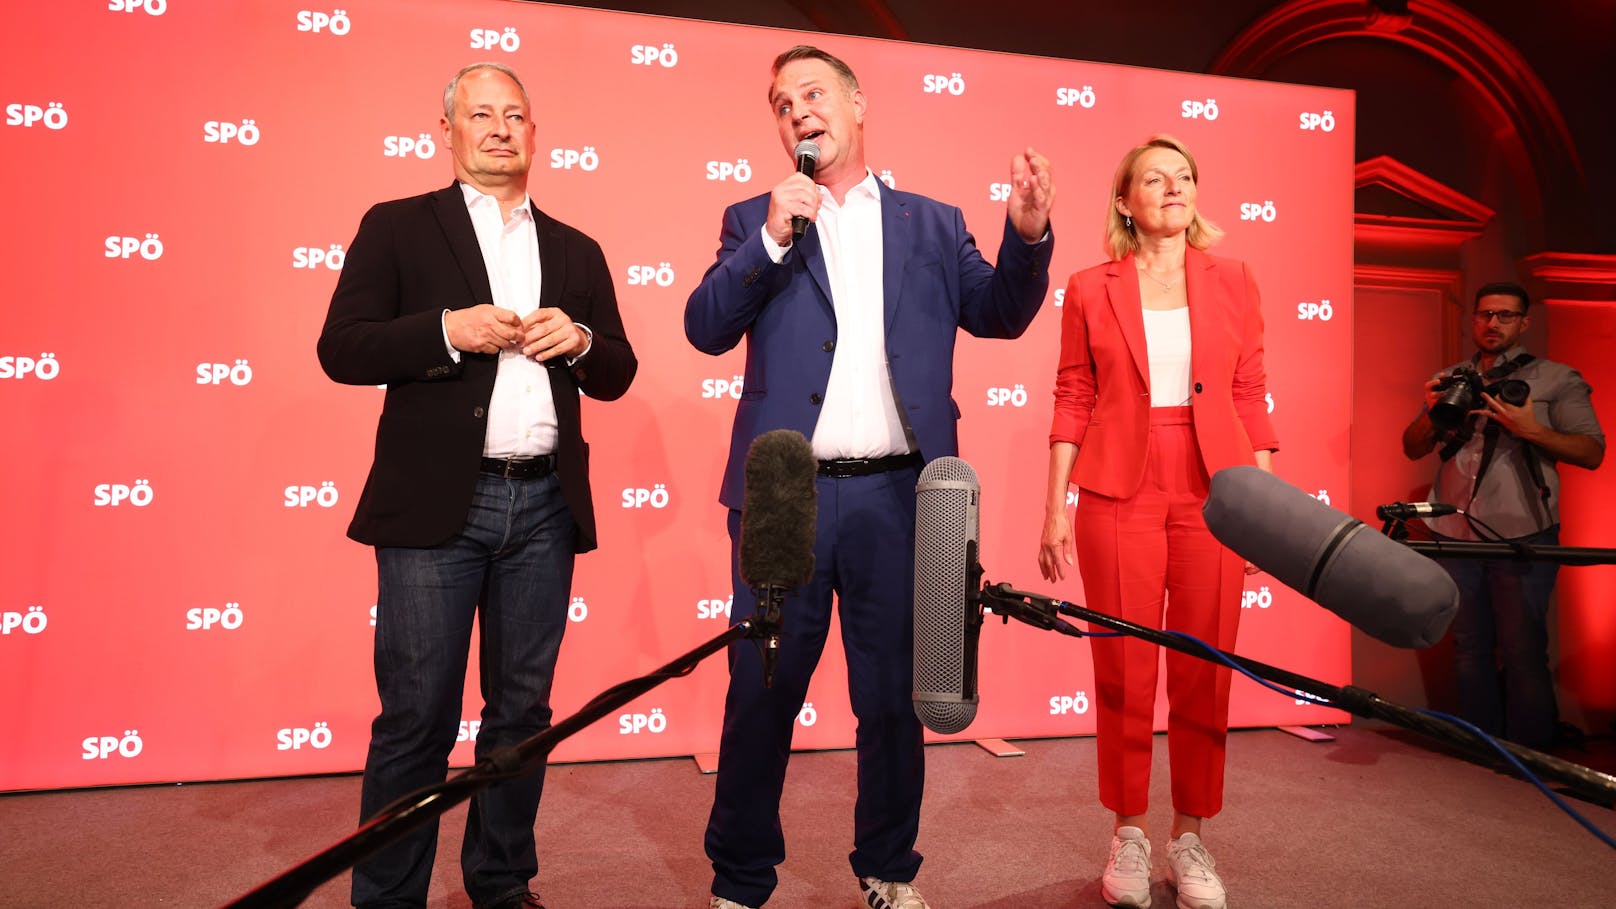 "Stabiles Ergebnis" – Babler redet SPÖ-Niederlage schön